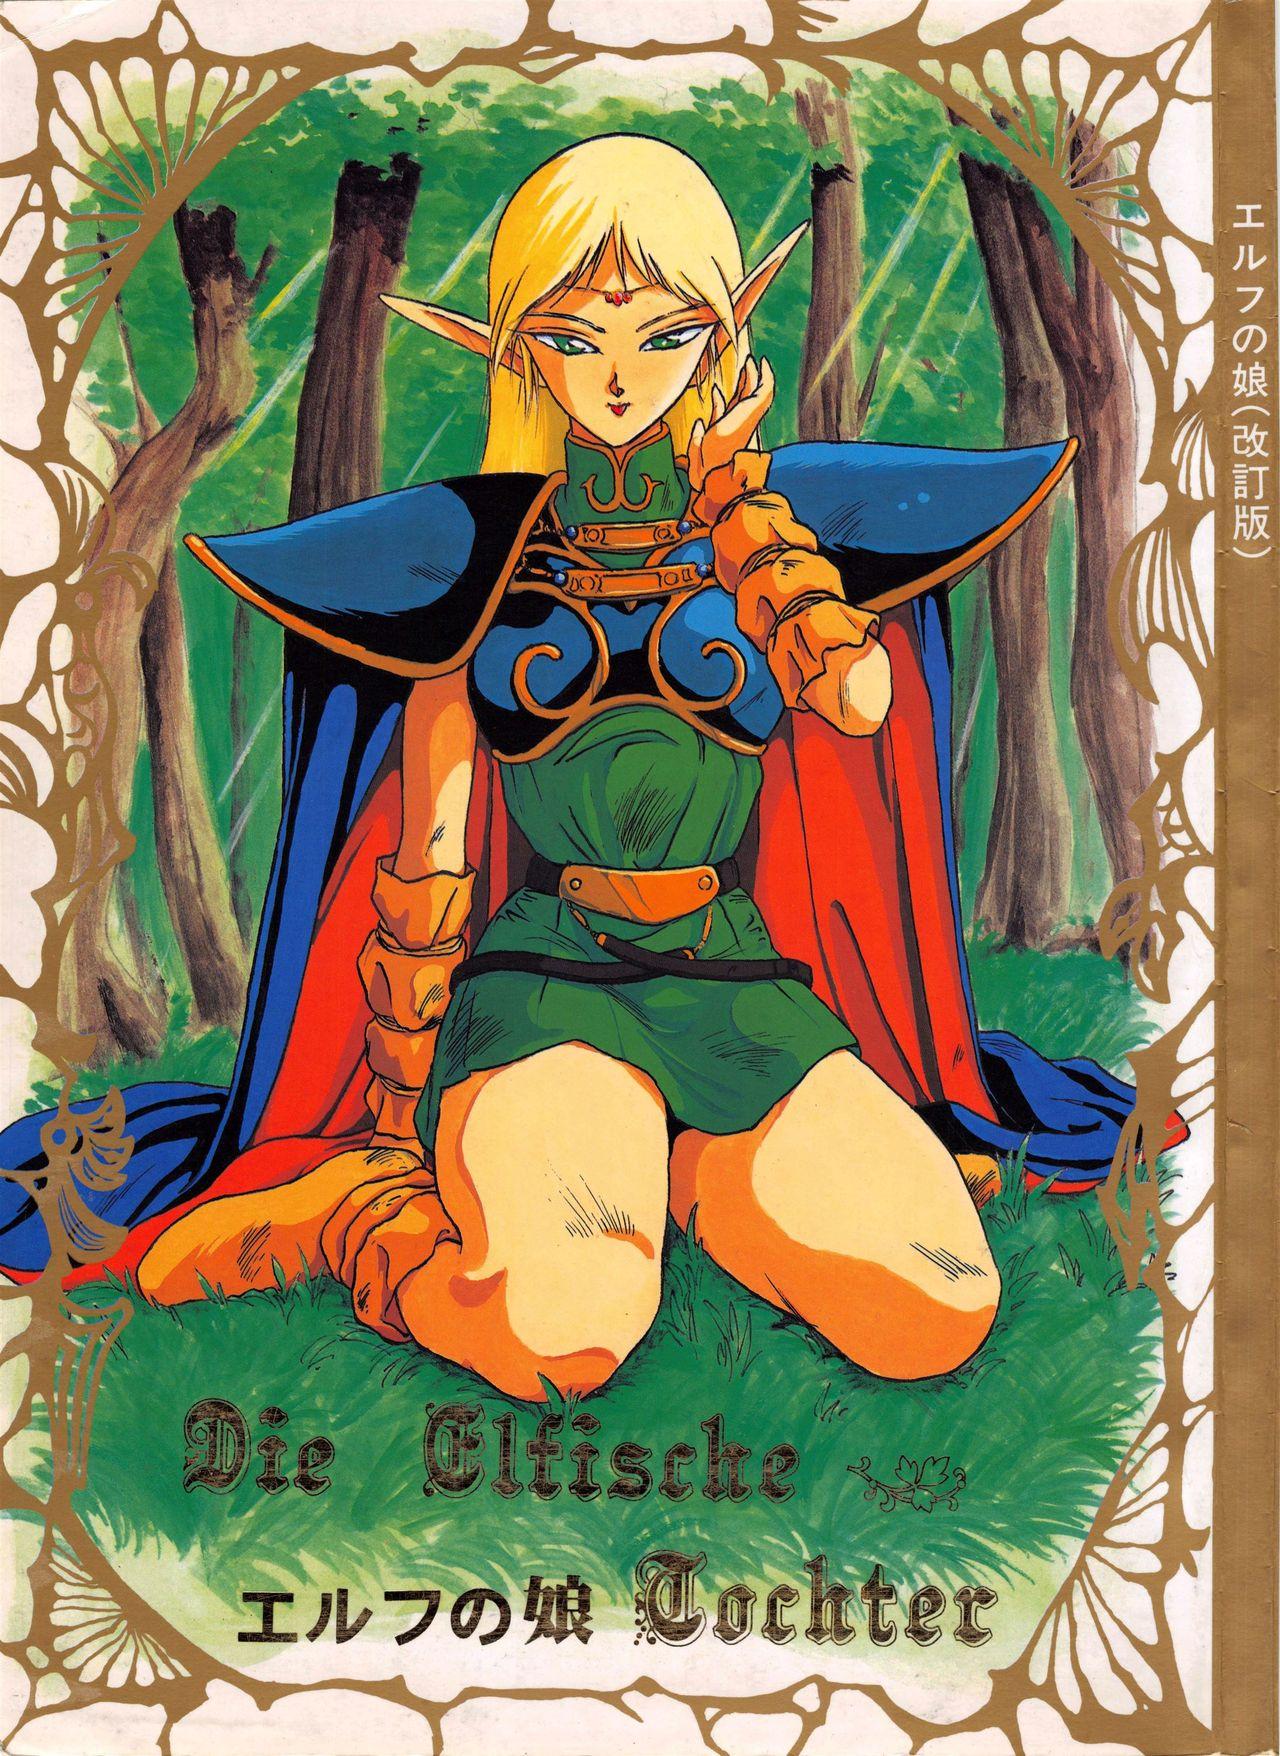 Elf no Musume Kaiteiban - Die Elfische Tochter revised edition 1